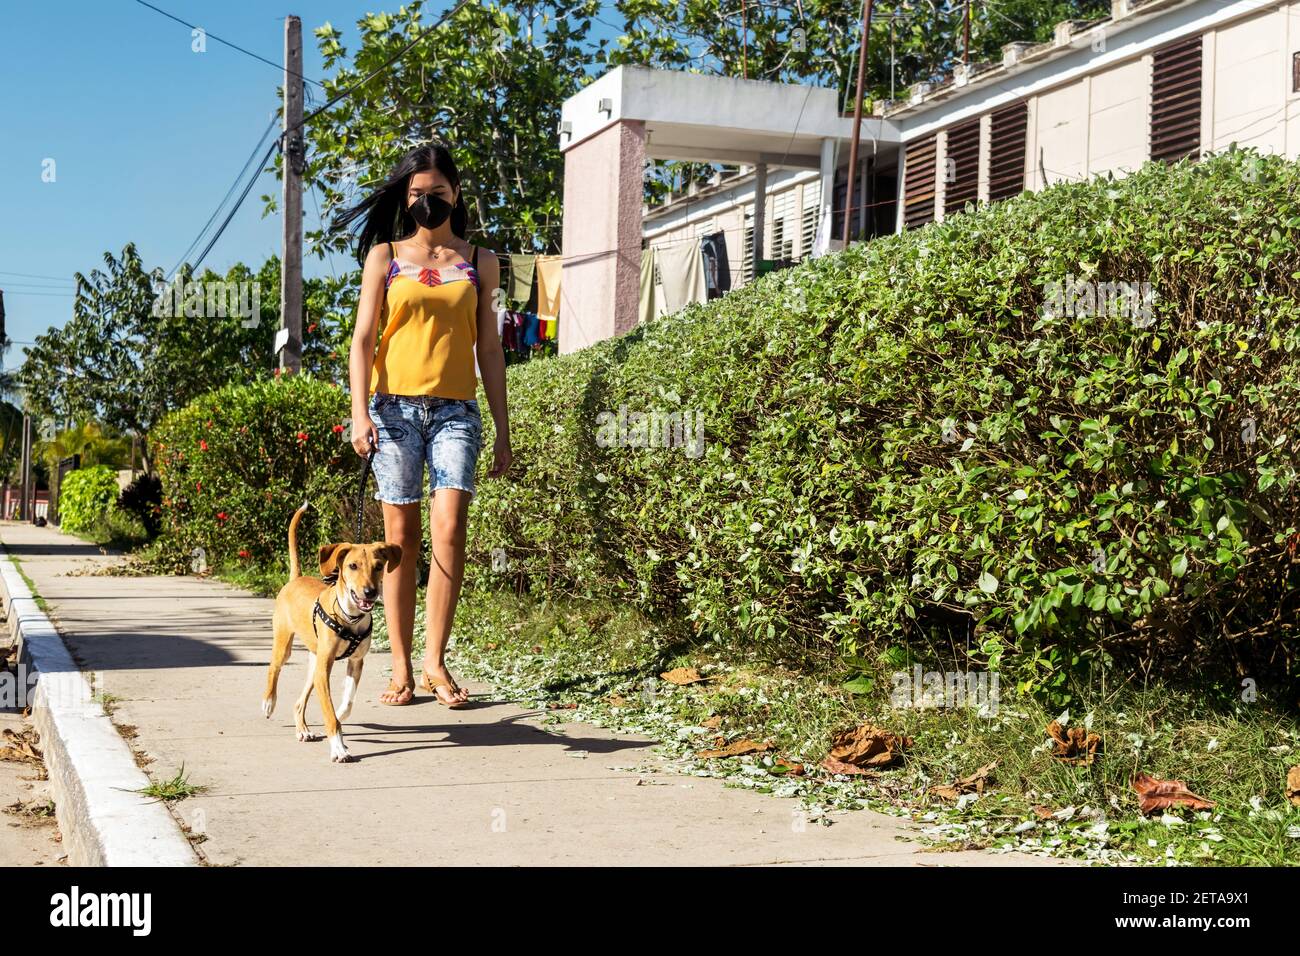 Lateinische junge Frau, die ihre halbgezüchtete Hündin auf der geht Bürgersteig in einer kleinen Stadt in Kuba Stockfoto